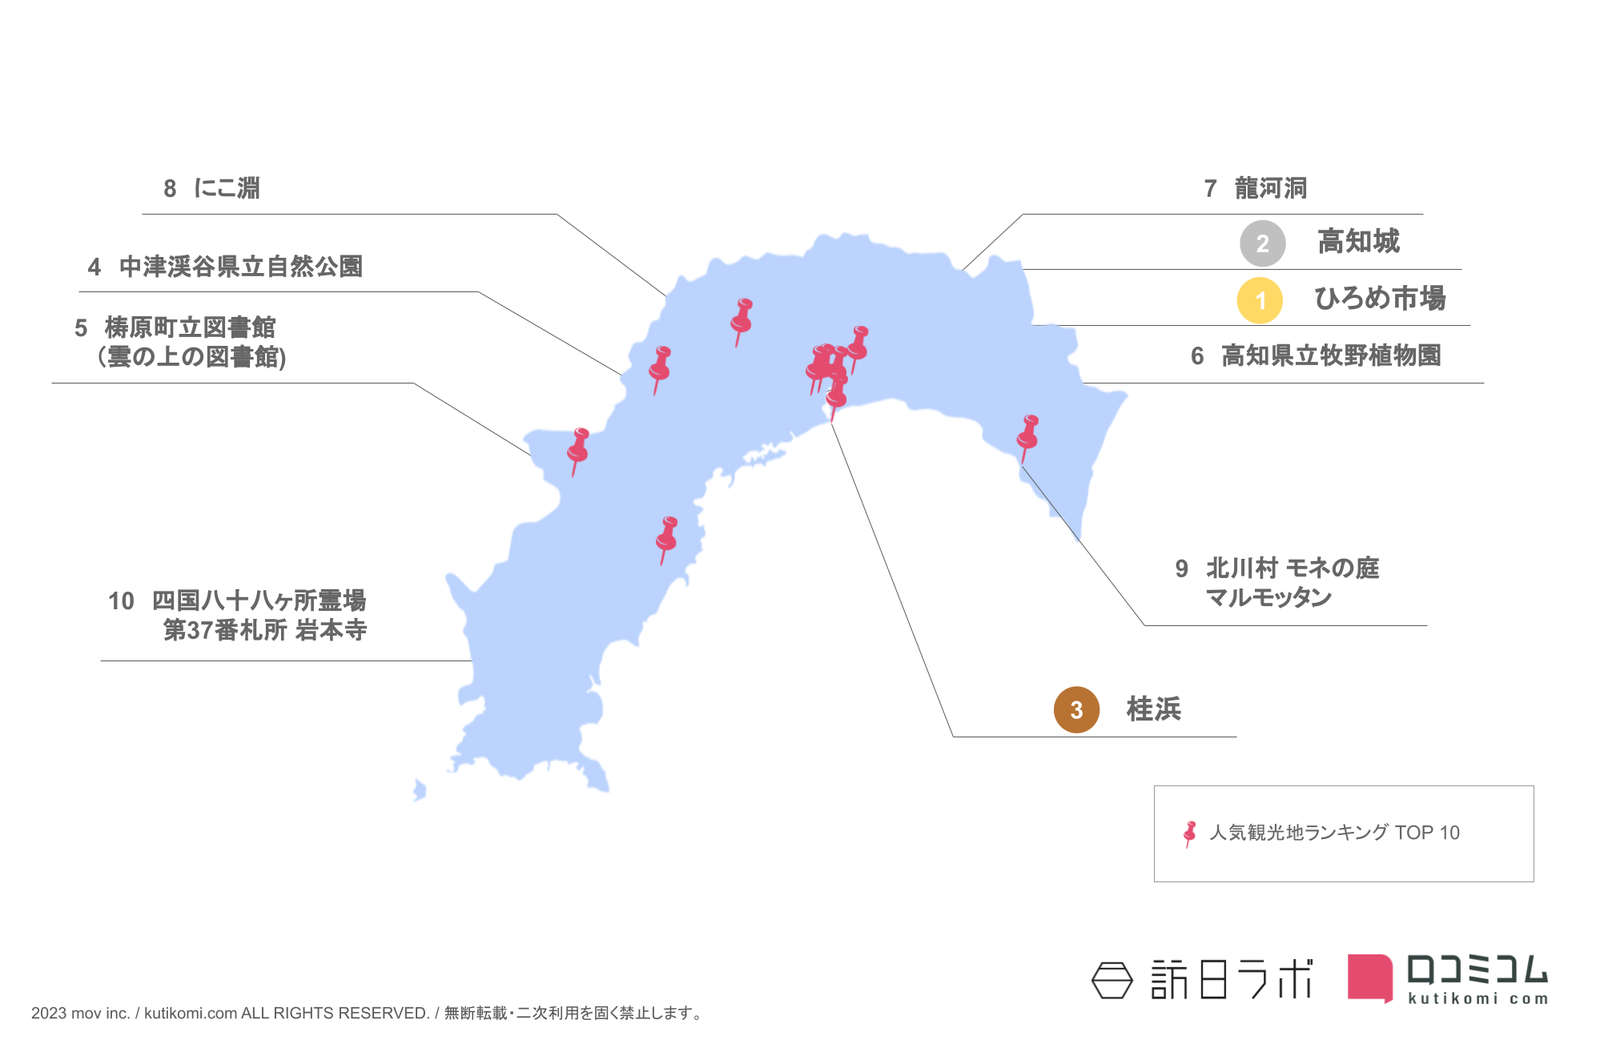 高知県インバウンド人気観光スポットランキング